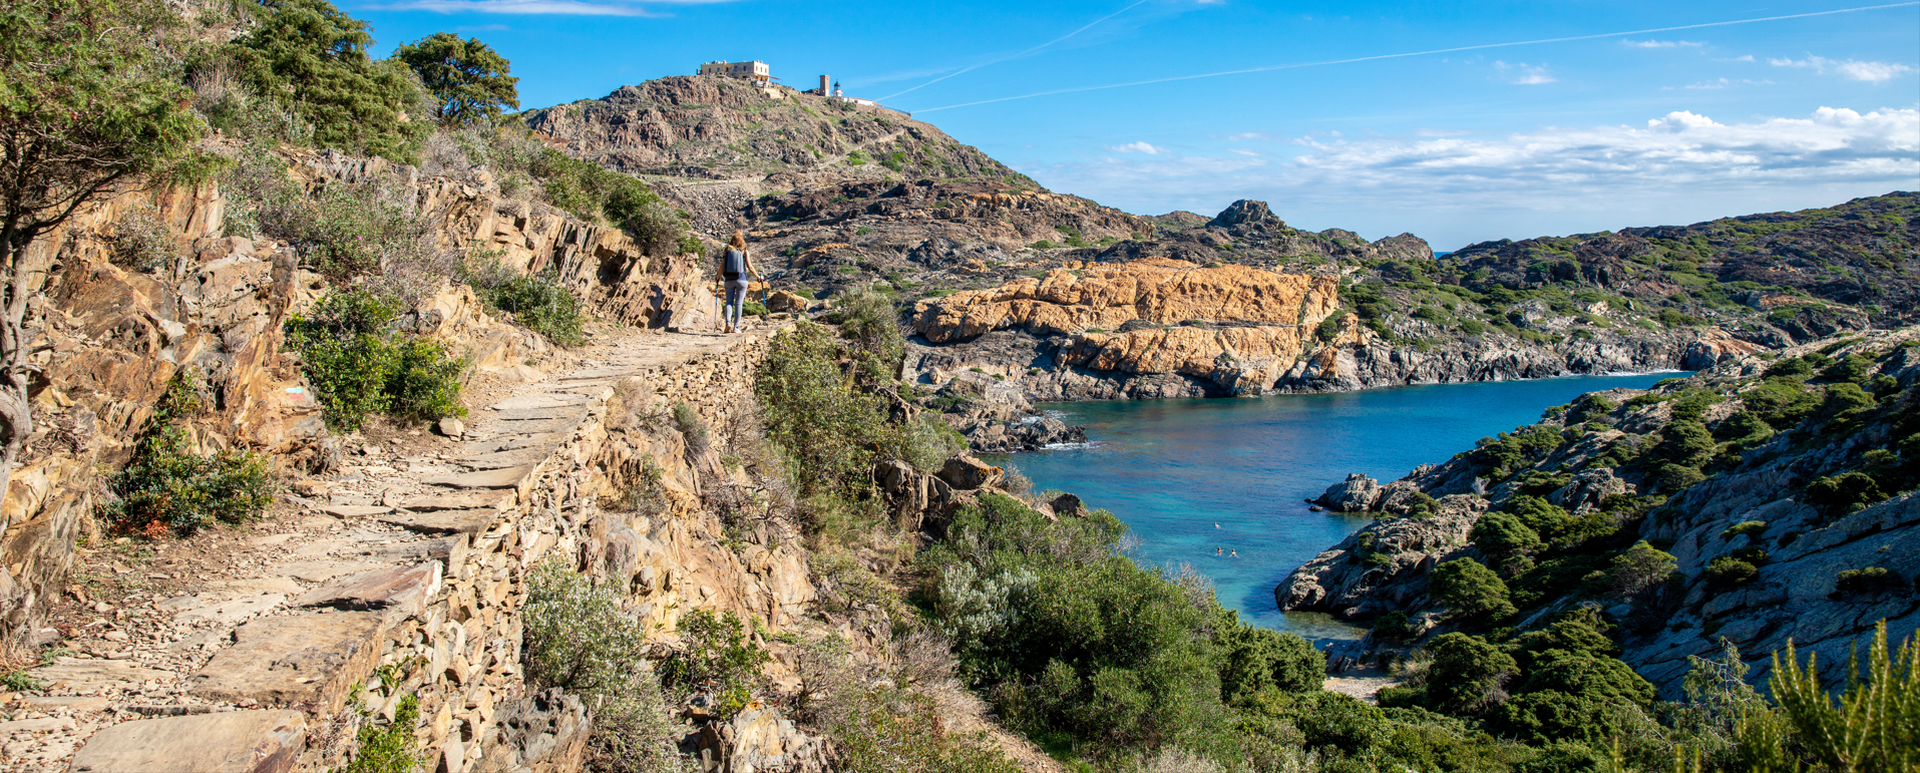 Randonneuse avec vue panoramique sur plage, falaise et phare - Costa brava en Espagne